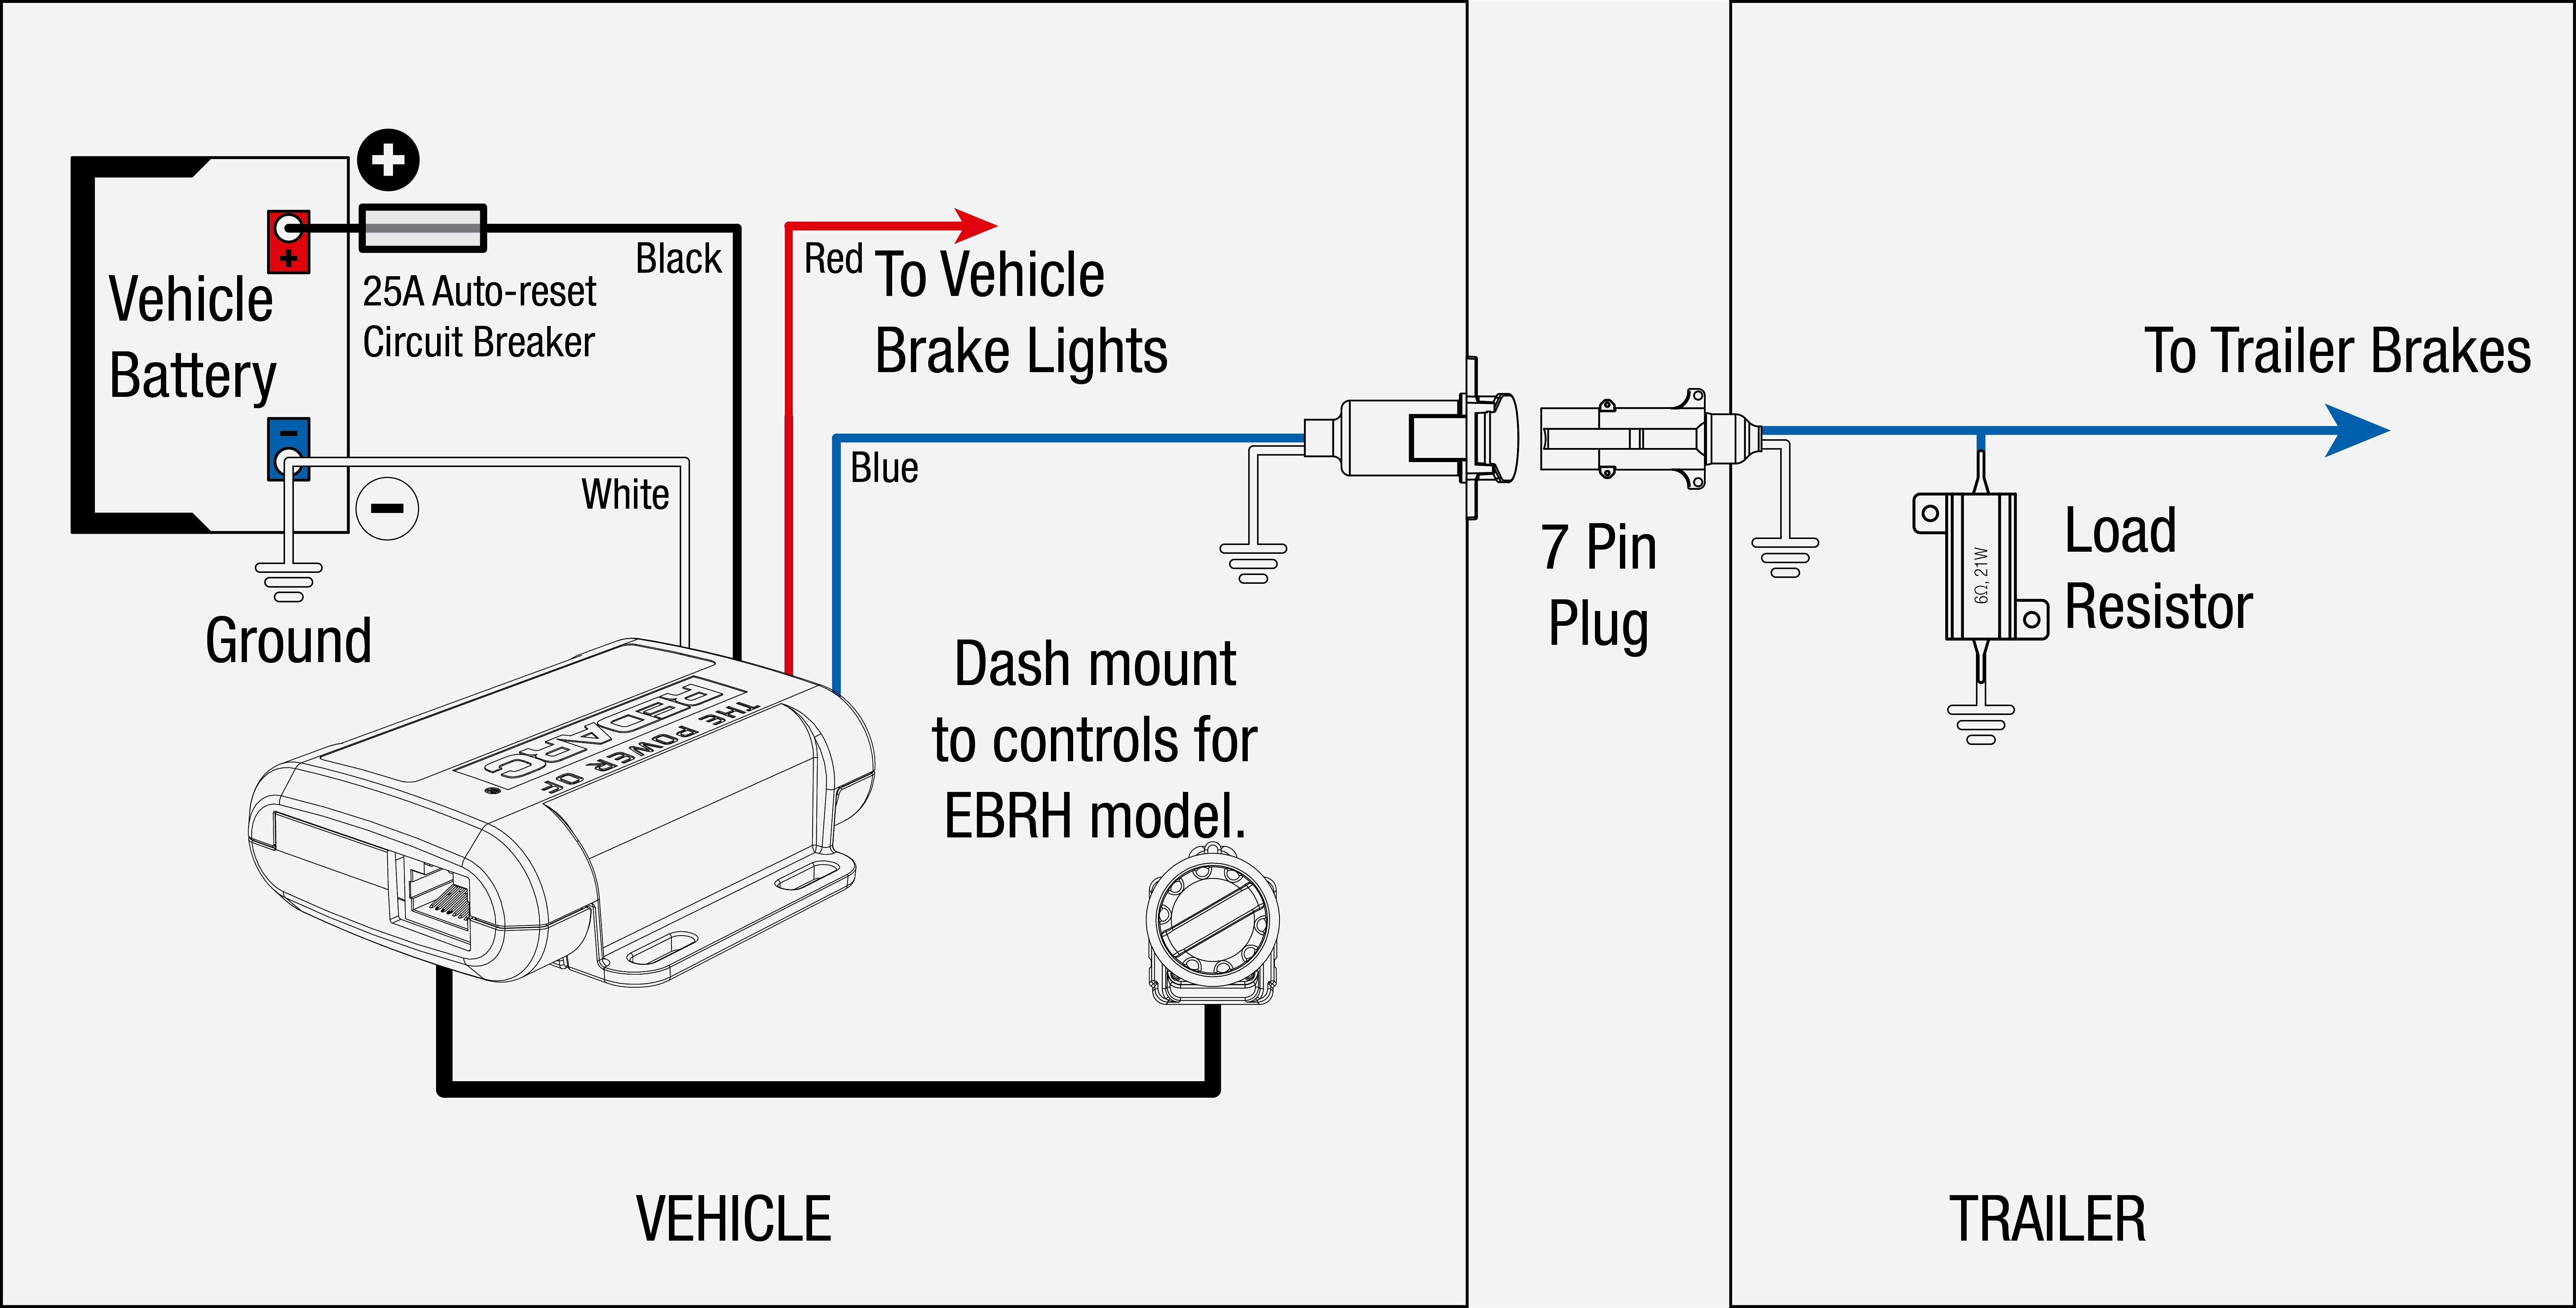 Electric Trailer Brake Controller Wiring Diagram Trailer Of Electric Trailer Brake Controller Wiring Diagram